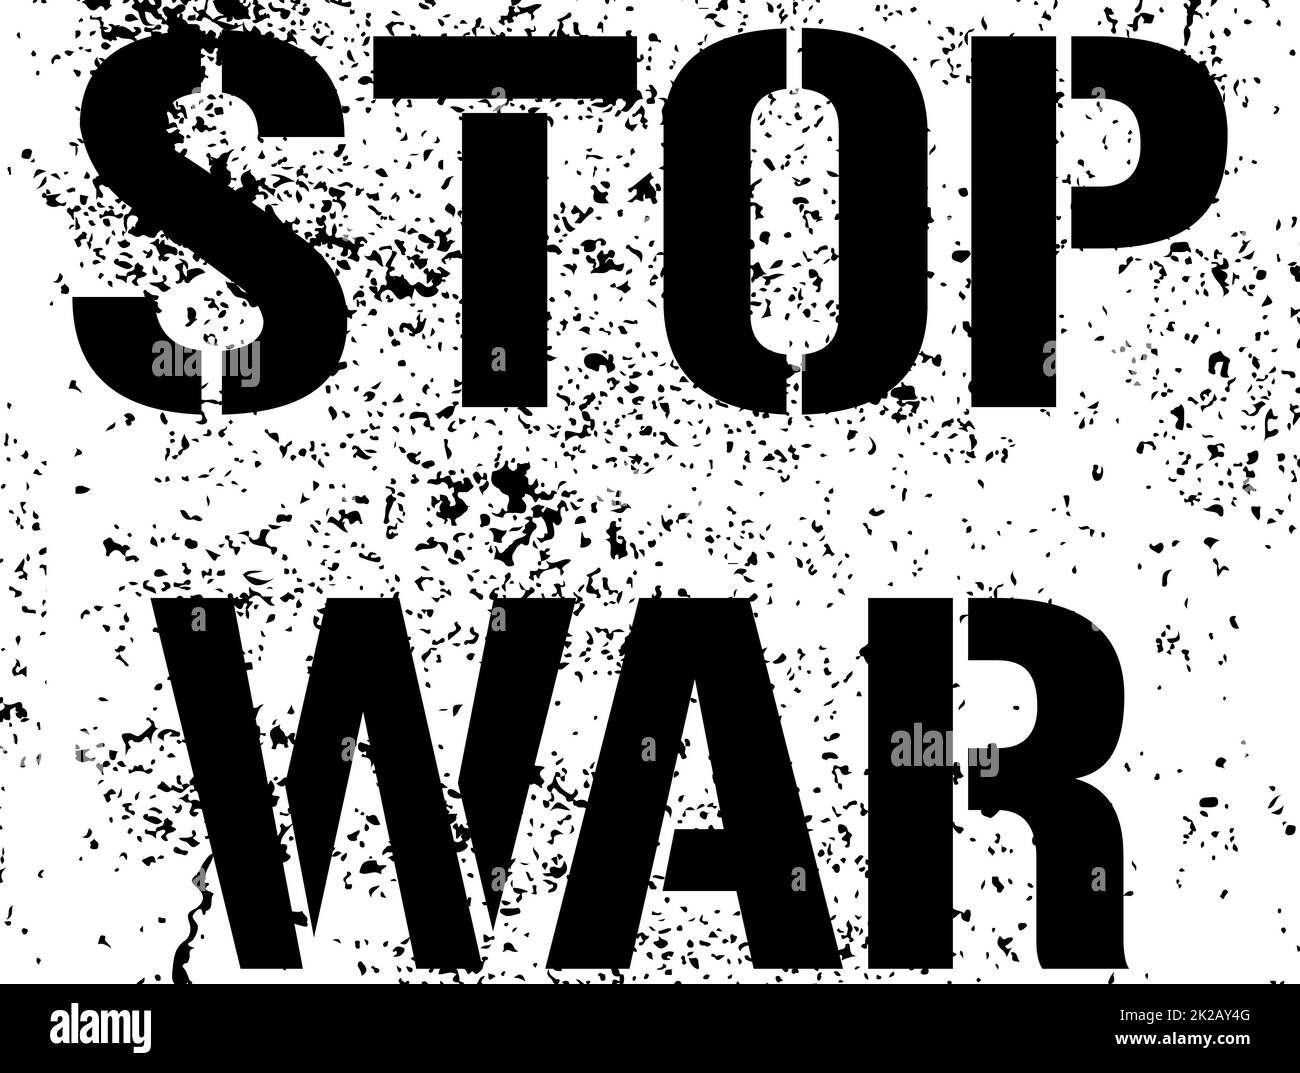 Beenden Sie den Krieg - Grunge-Text. Protestschild Graffiti-Farbe. Ein Aufruf, den Krieg in der Welt zu beenden. Der bewaffnete Konflikt in der Ukraine muss gestoppt werden. Schablone - Vektordarstellung. Schwarze Friedensnachricht. Stockfoto